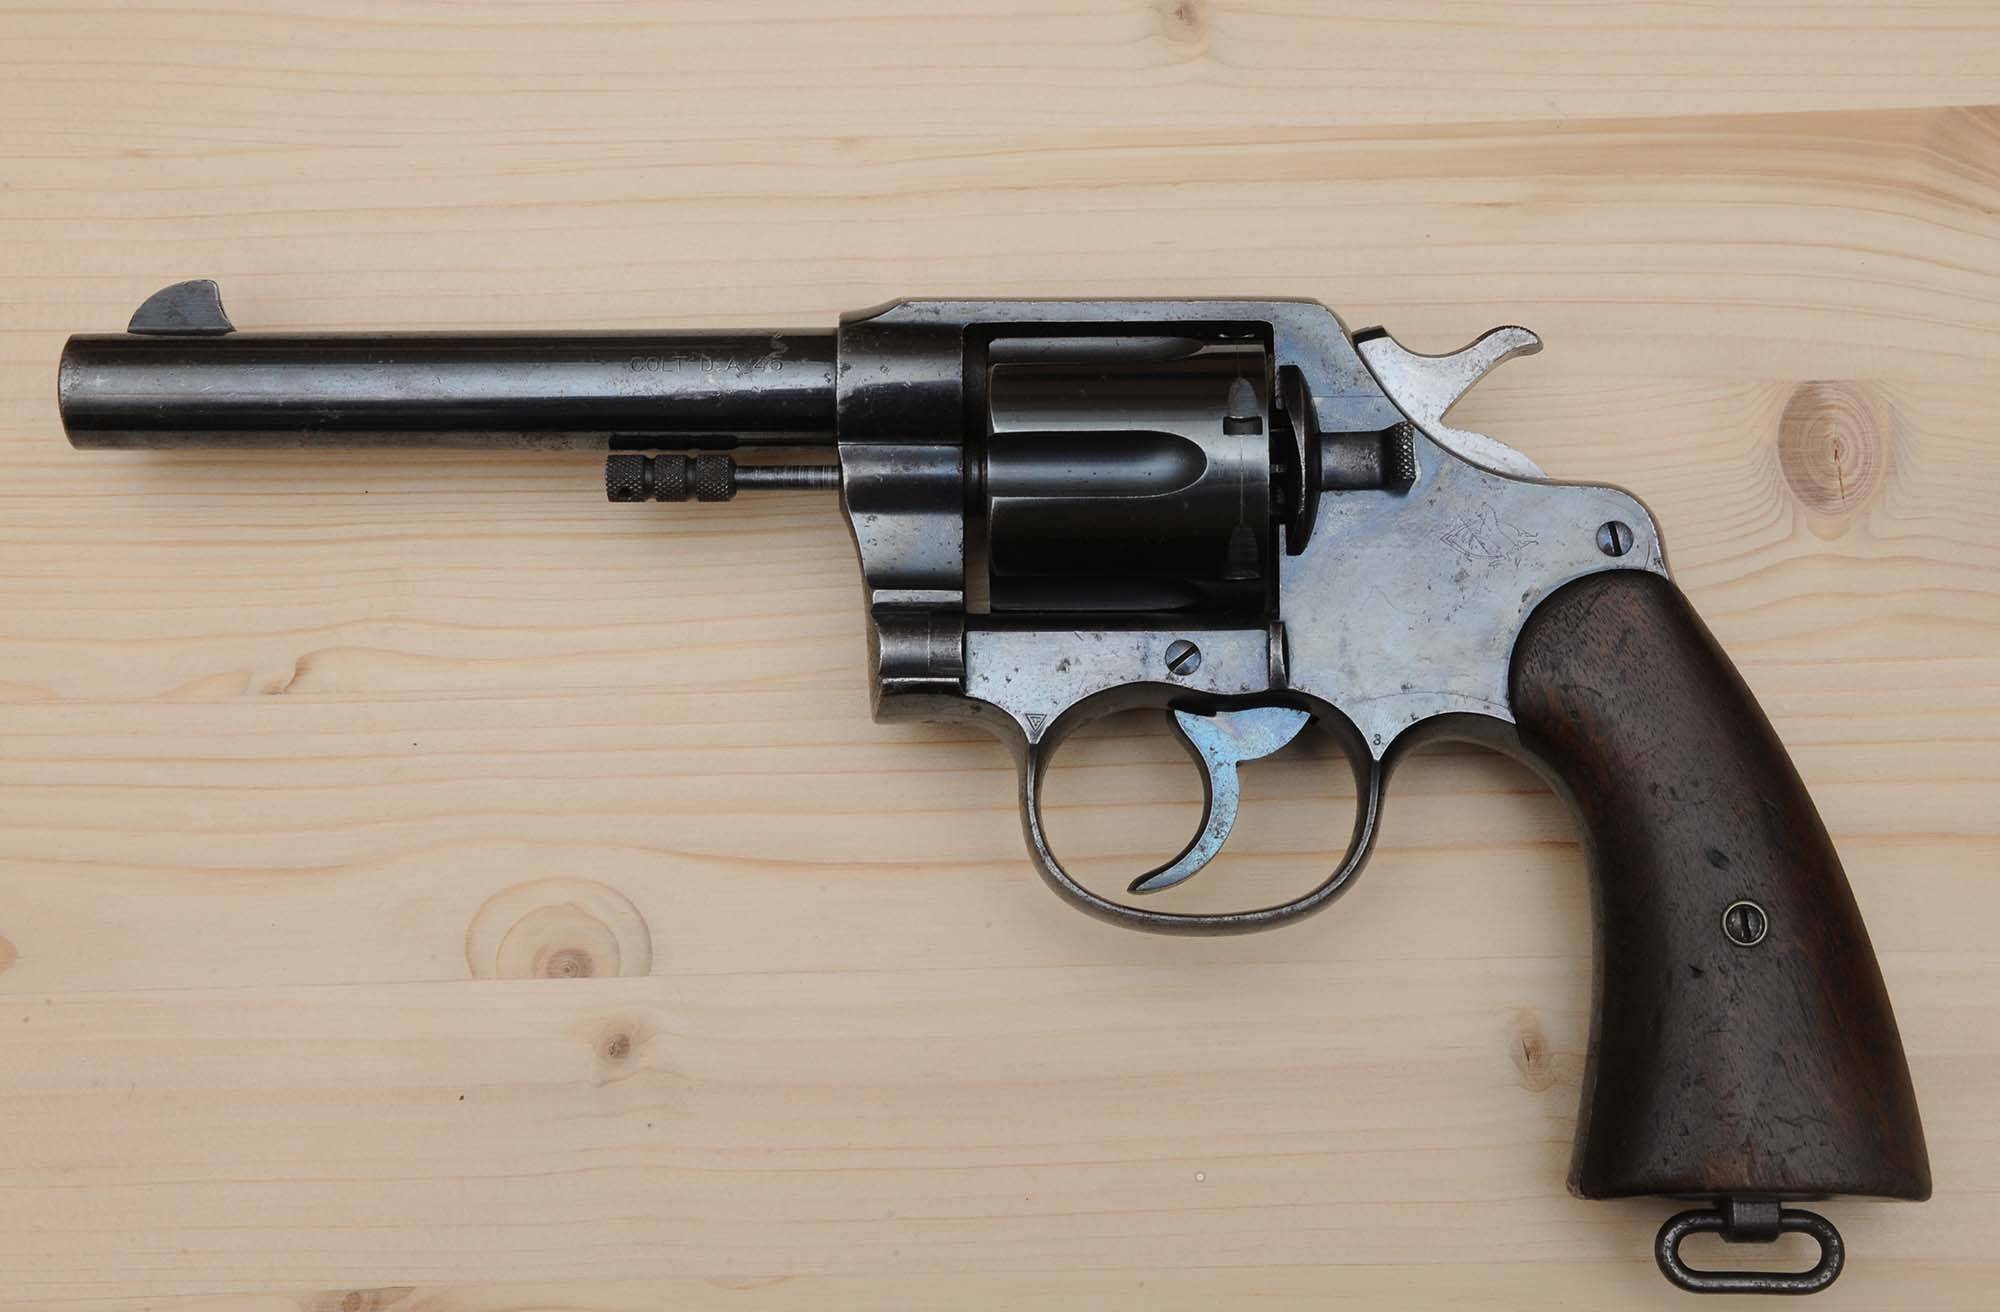 М1917 (револьвер) — википедия переиздание // wiki 2